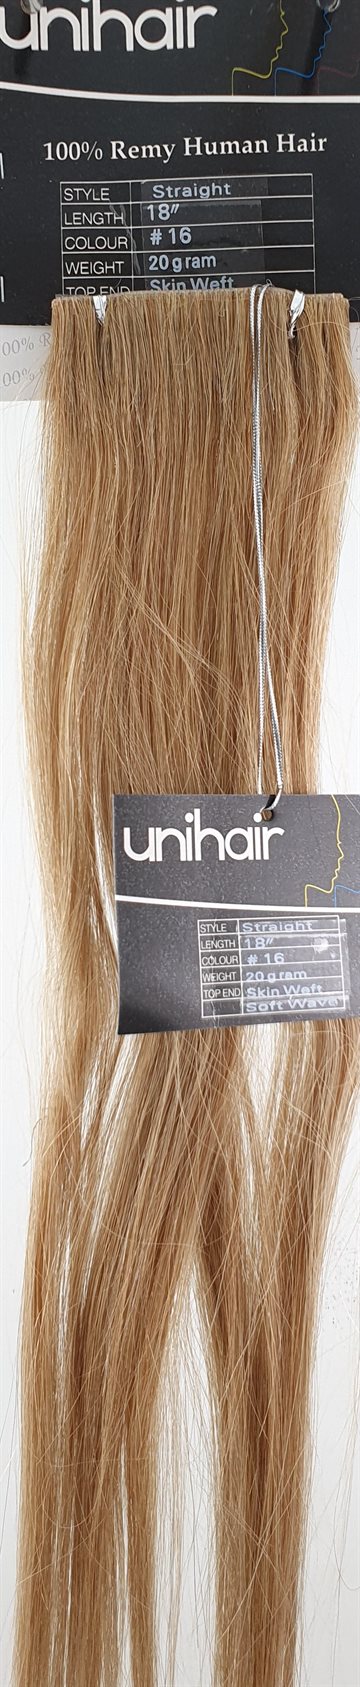 Human Hair - Skin Weft hair (tape on) color 16 -  45 cm. length.)